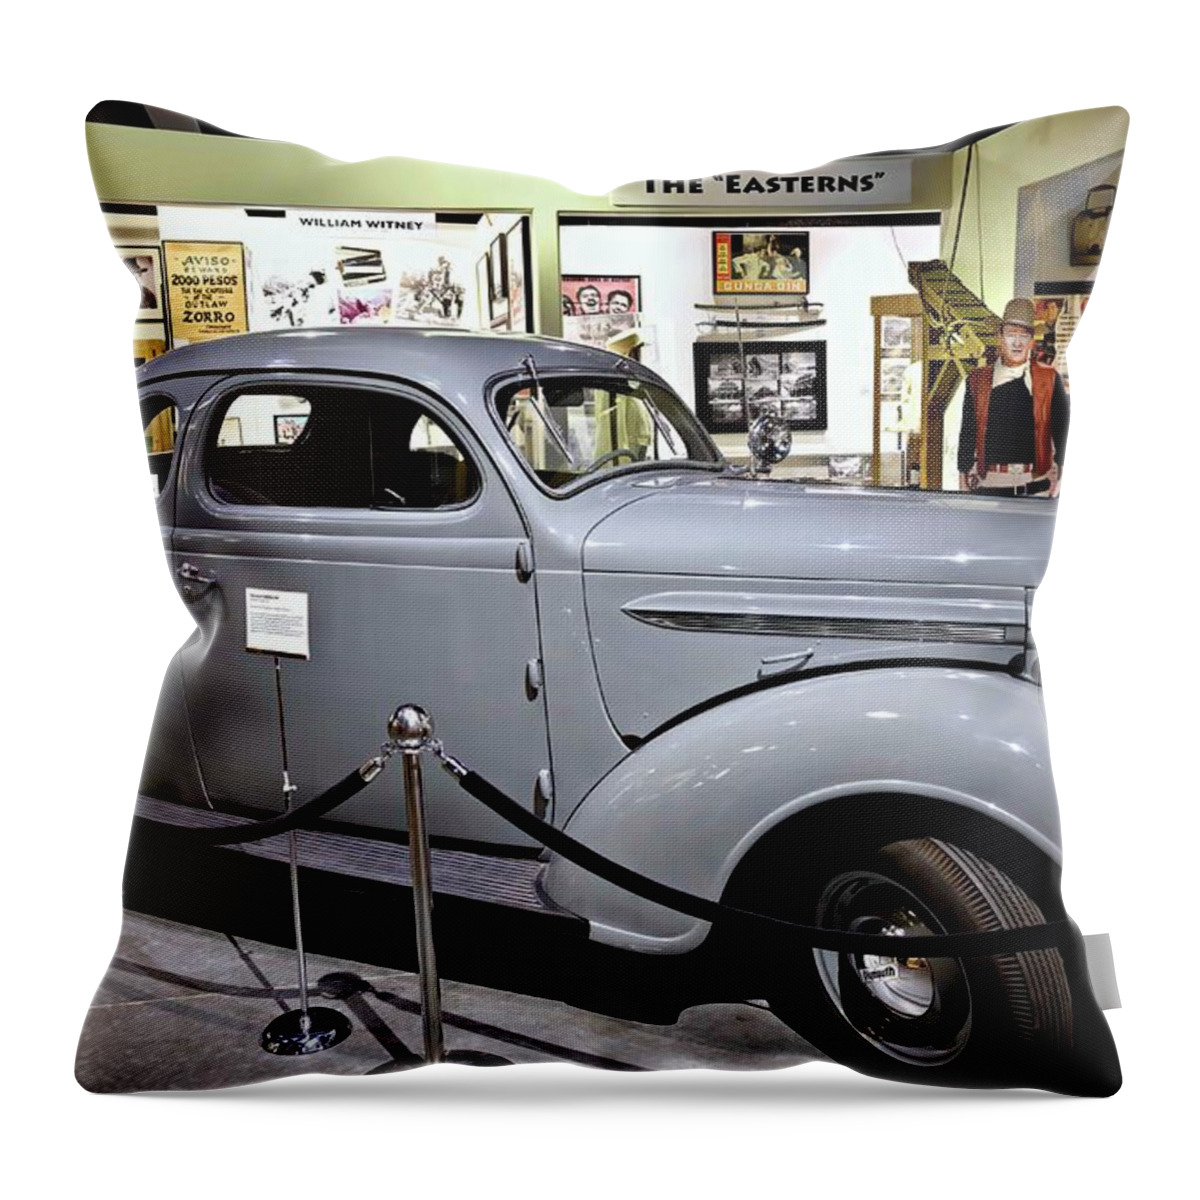  Humphrey Bogart Throw Pillow featuring the photograph Humphrey Bogart High Sierra Car by David Lawson